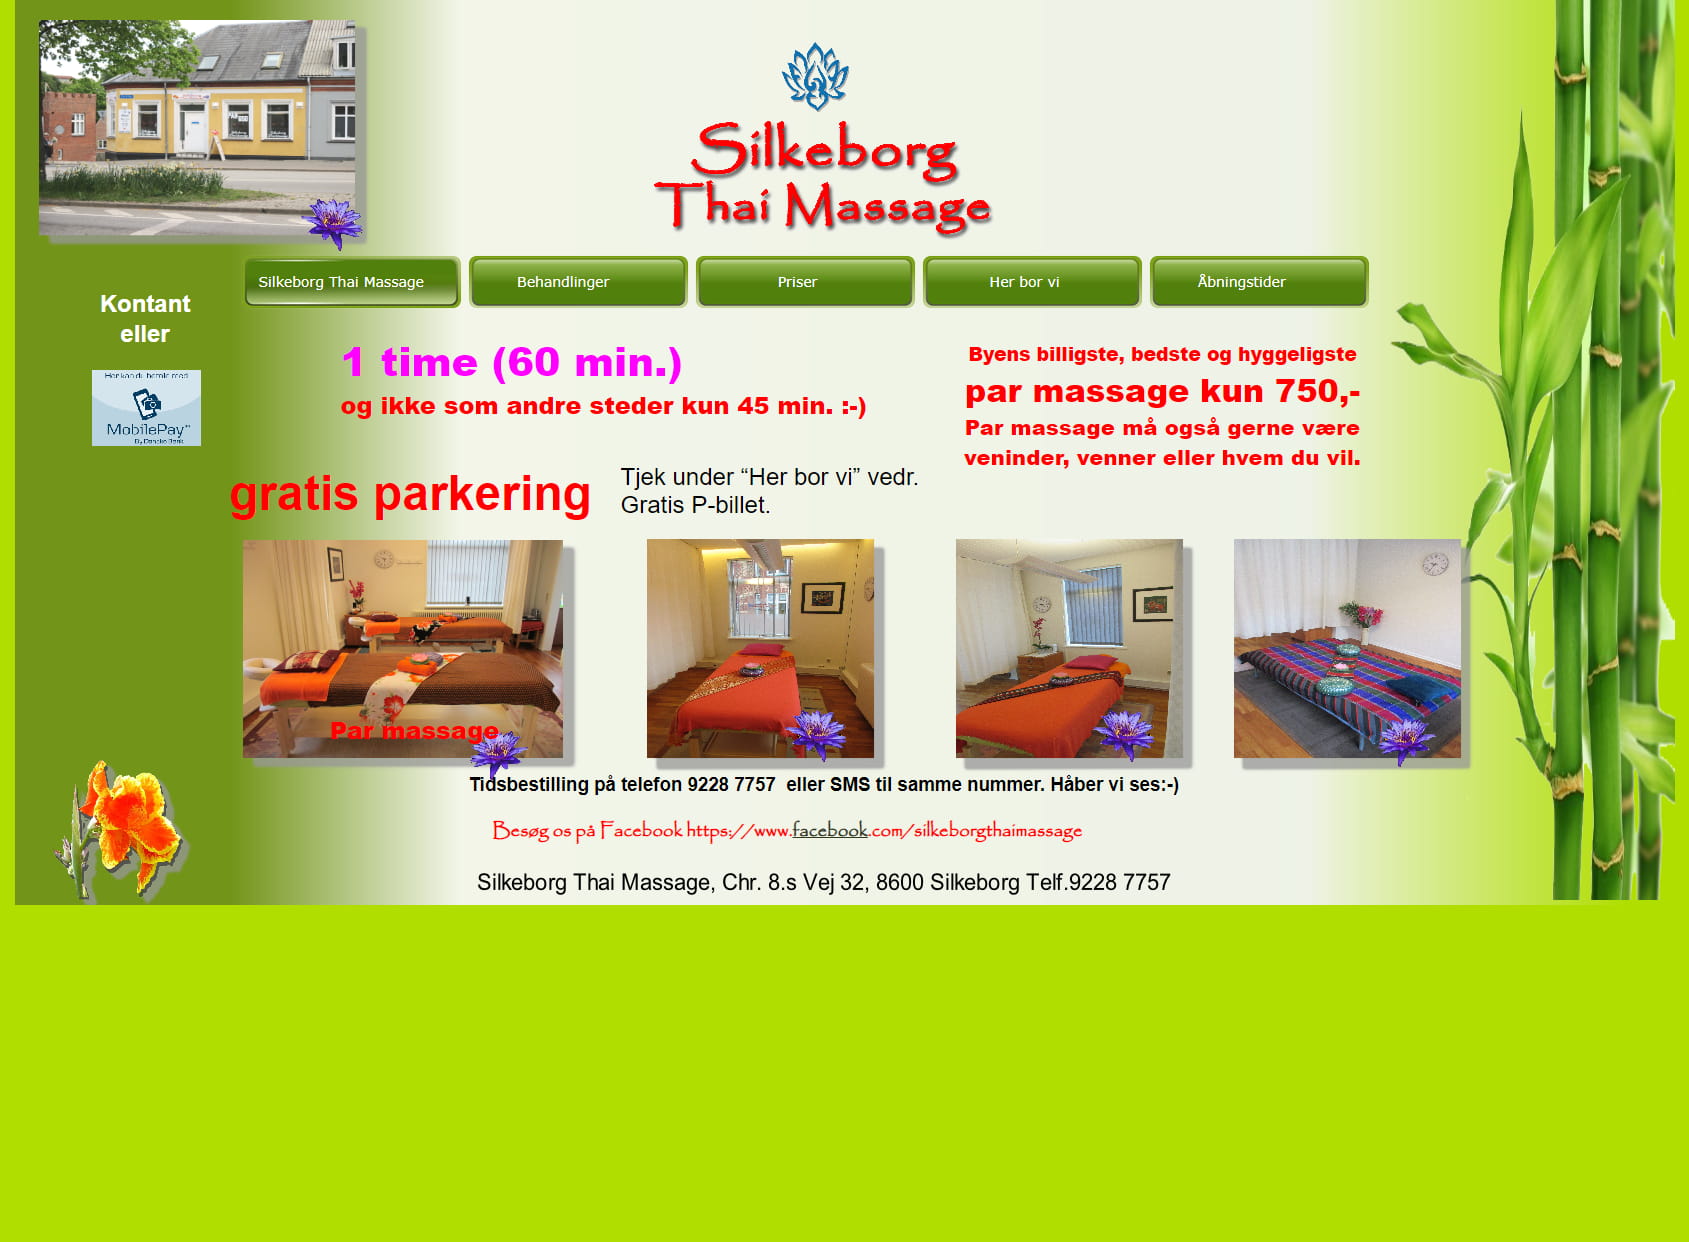 Silkeborg Thai Massage